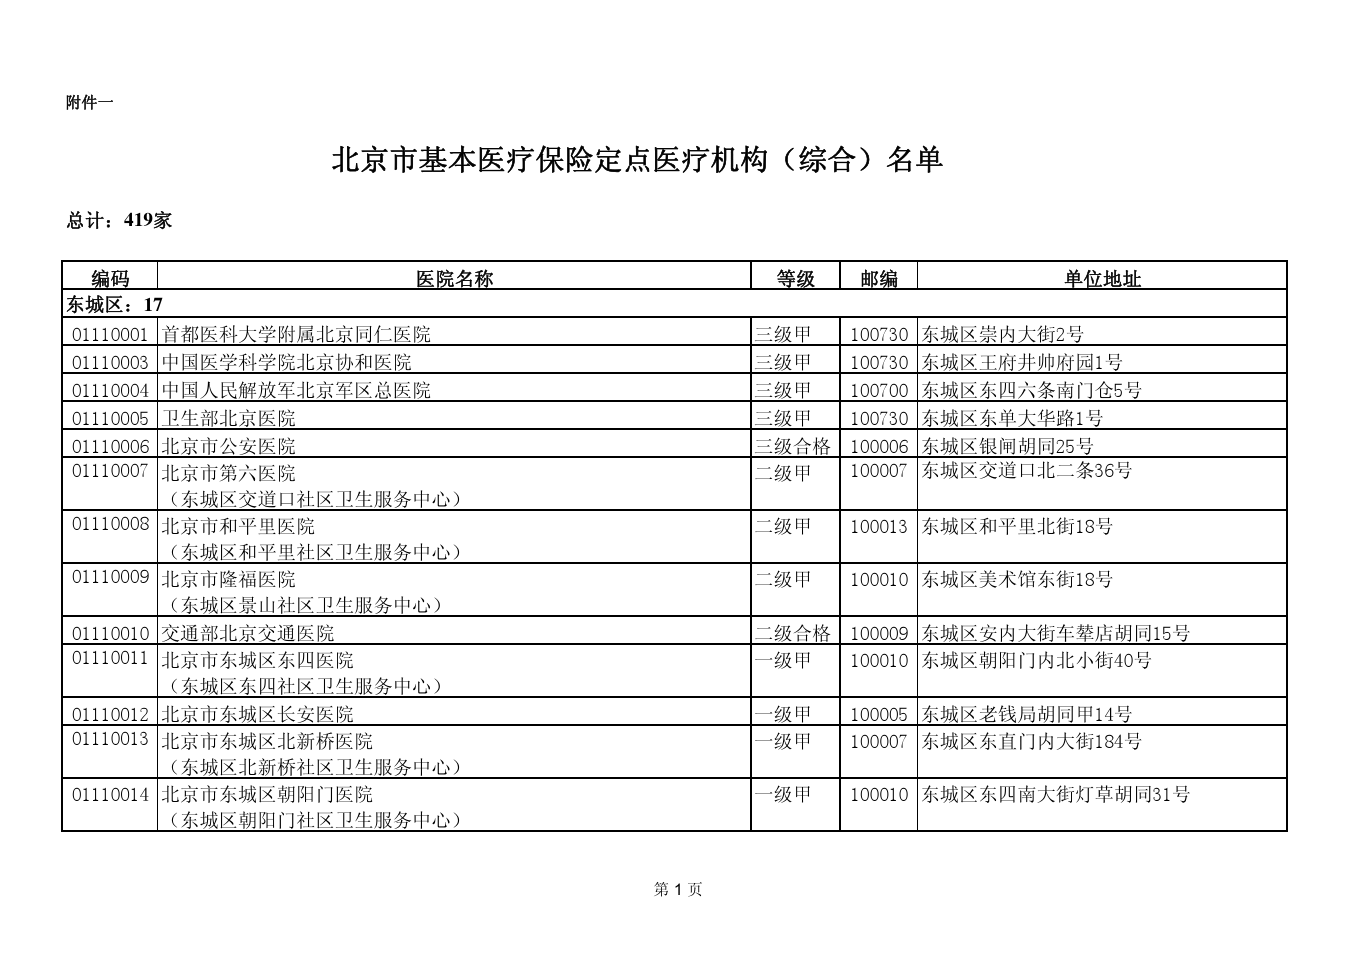 北京市基本医疗保险定点医疗机构(综合)名单